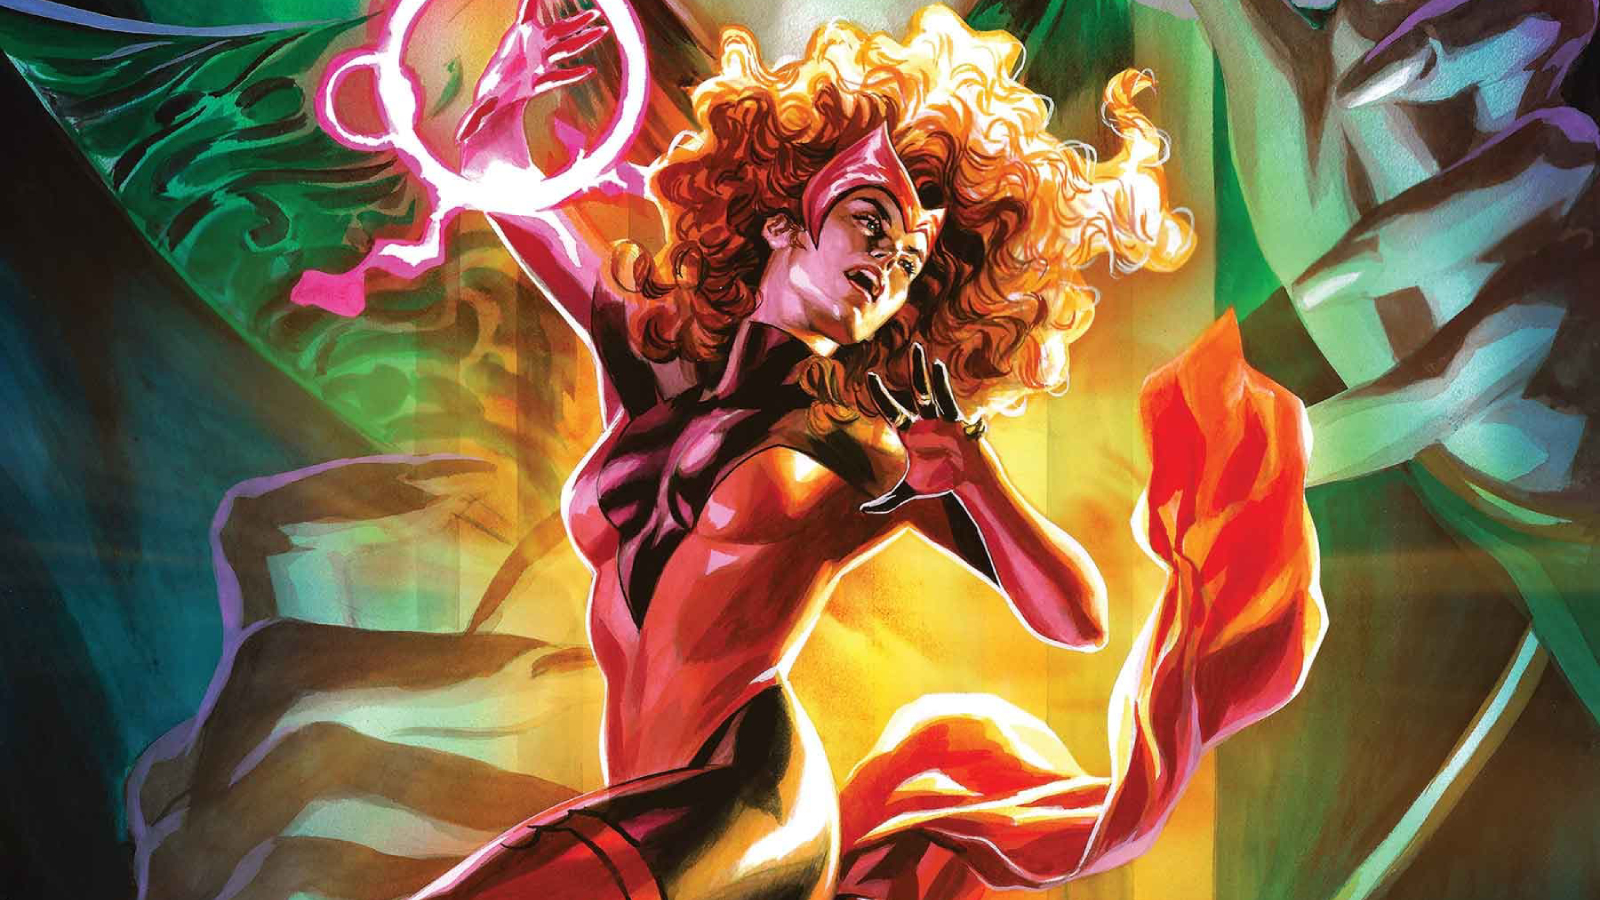 Scarlet Witch #10 Sneak Peek Released by Marvel